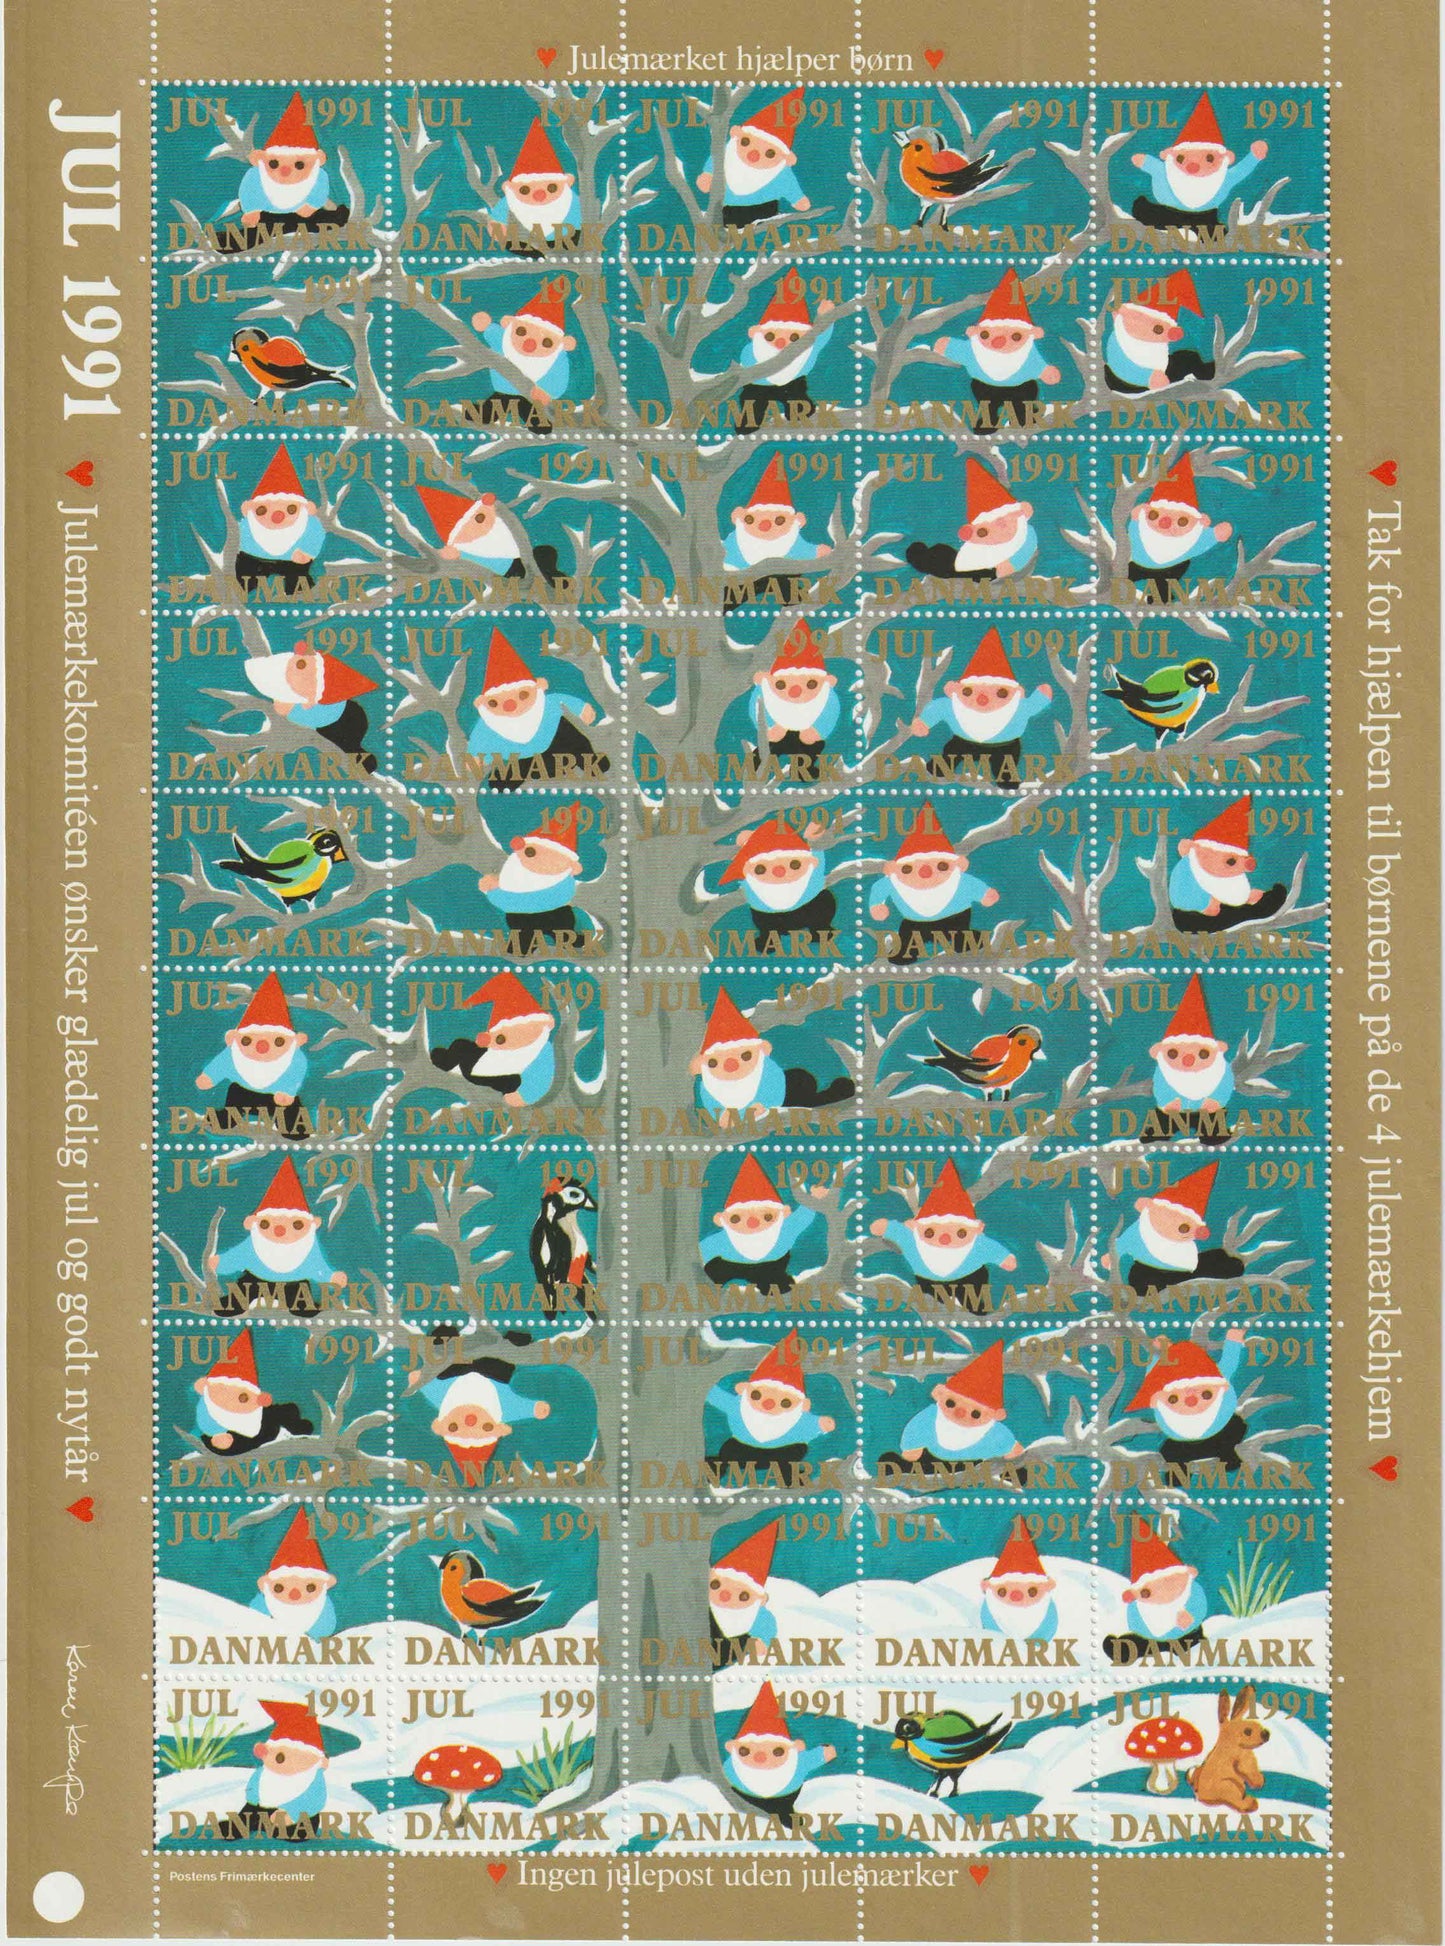 Julemærkeark 1991, Glædelig jul, godt nytår